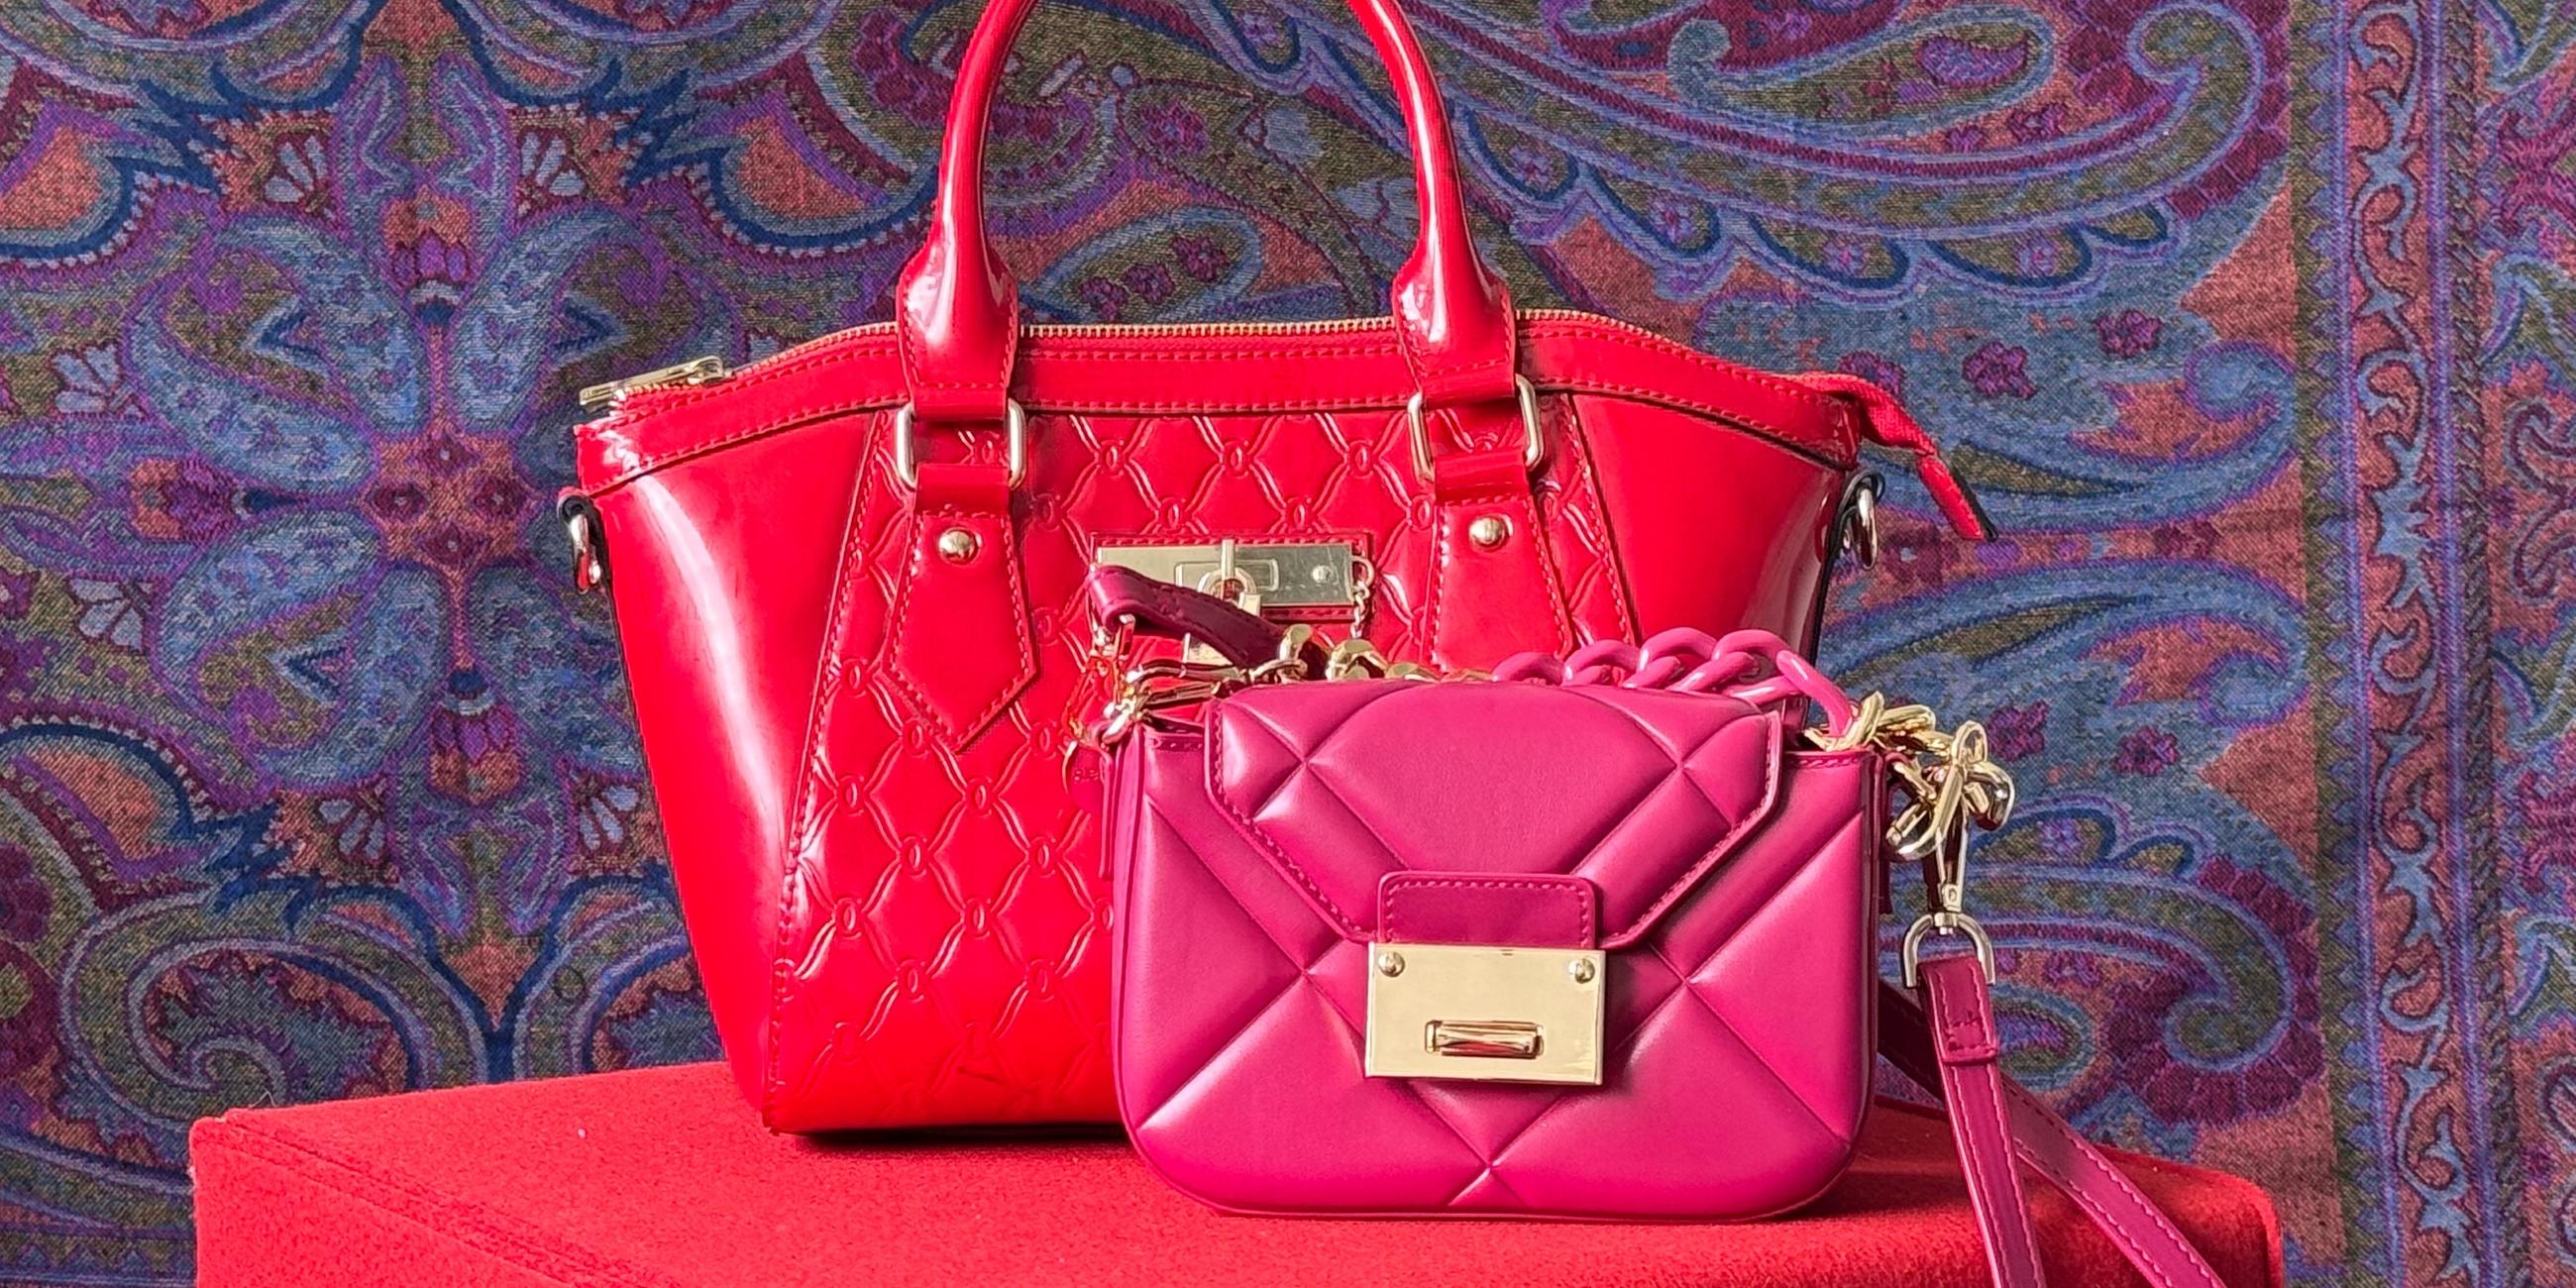 Rote und pinkfarbene Handtasche in einer Auslage